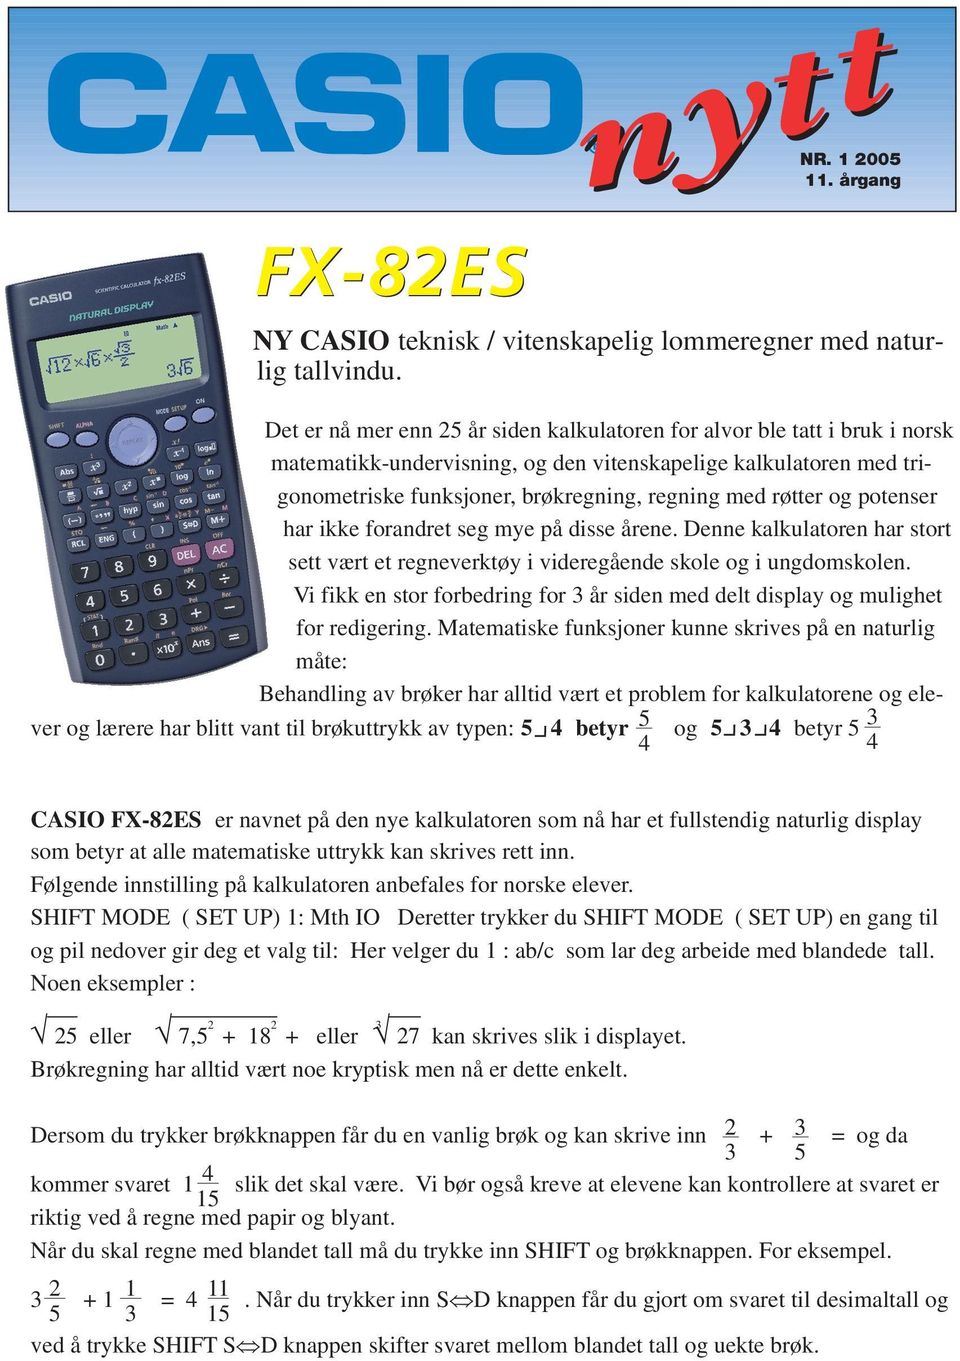 ikke foradret seg mye på disse åree. Dee kalkulatore har stort sett vært et regeverktøy i videregåede skole og i ugdomskole.